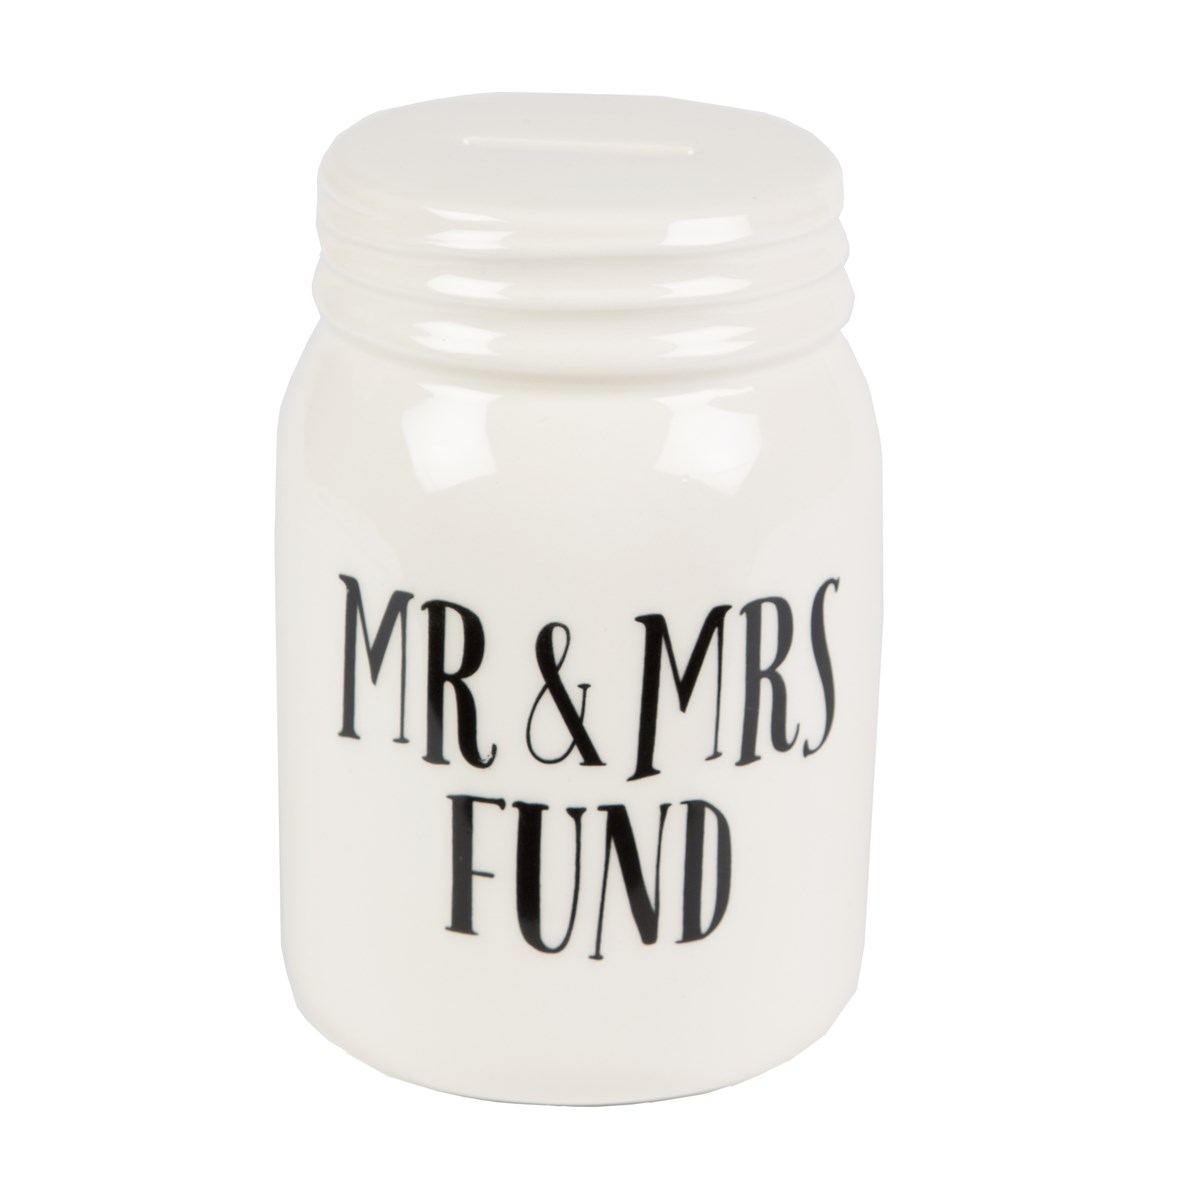 Mr & Mrs Fund Jar